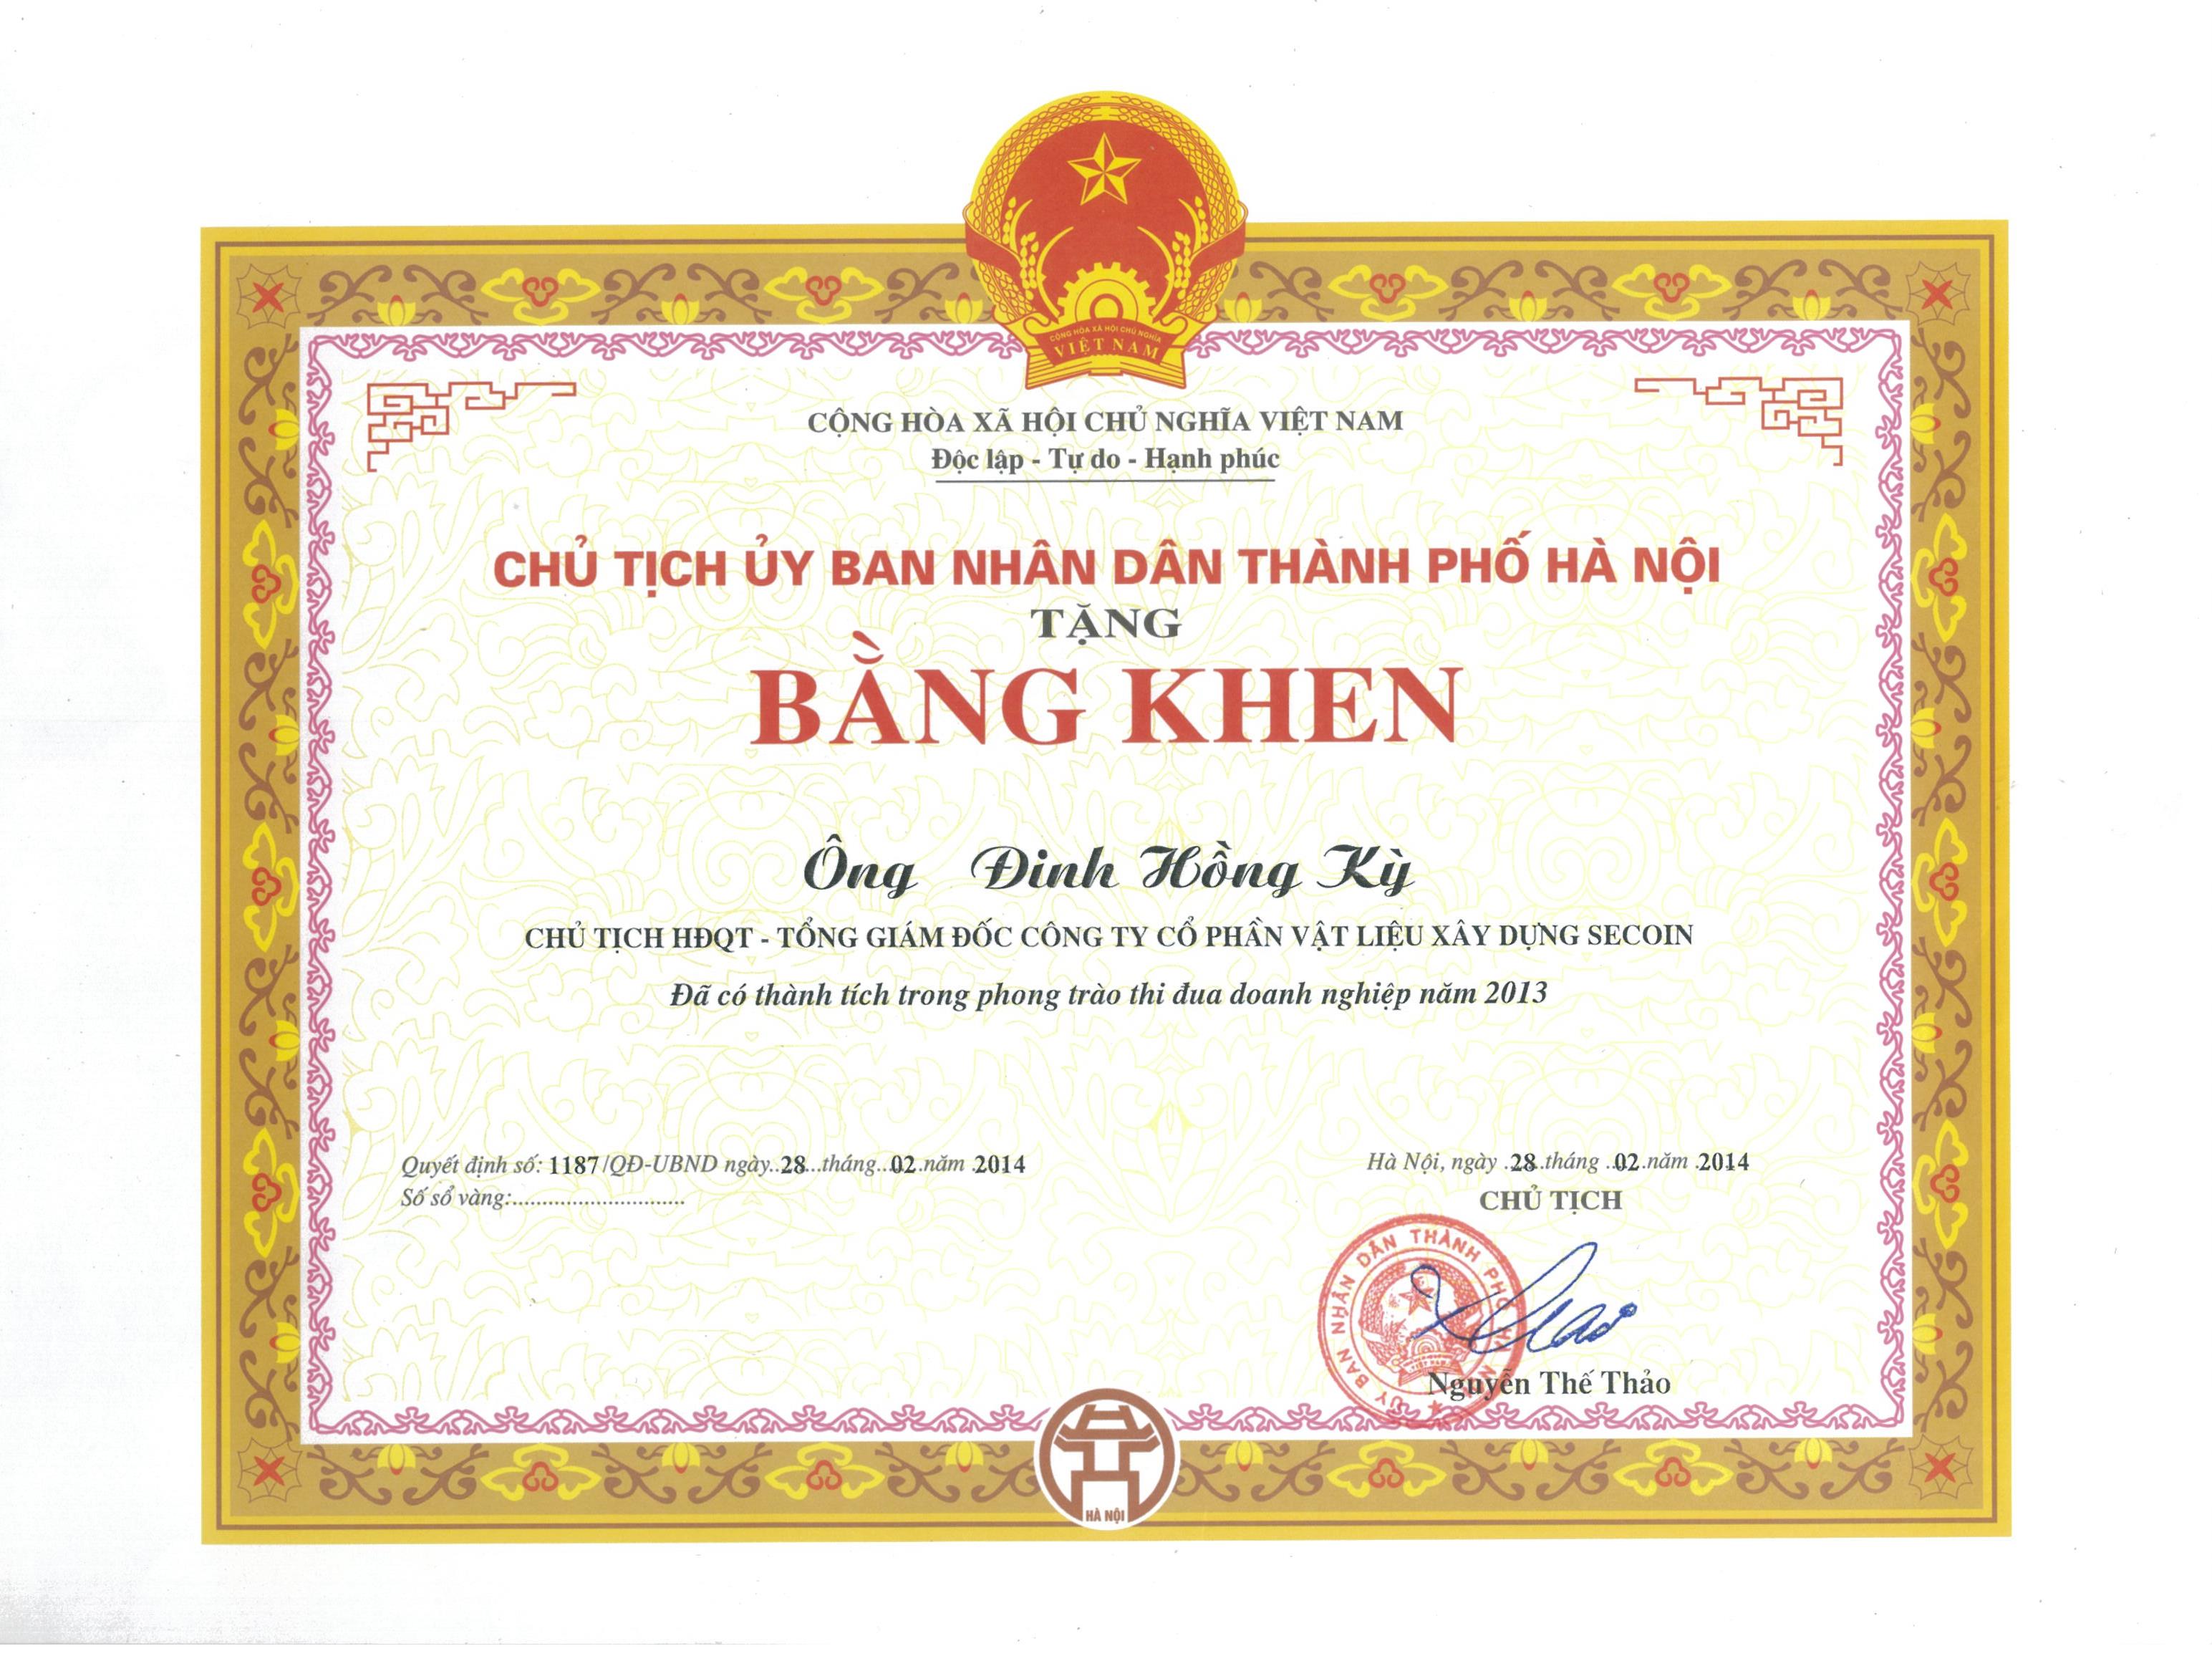 Bằng khen của Chủ tịch ủy ban nhân dân Thành phố Hà Nội trao tặng ông Đinh Hồng Kỳ